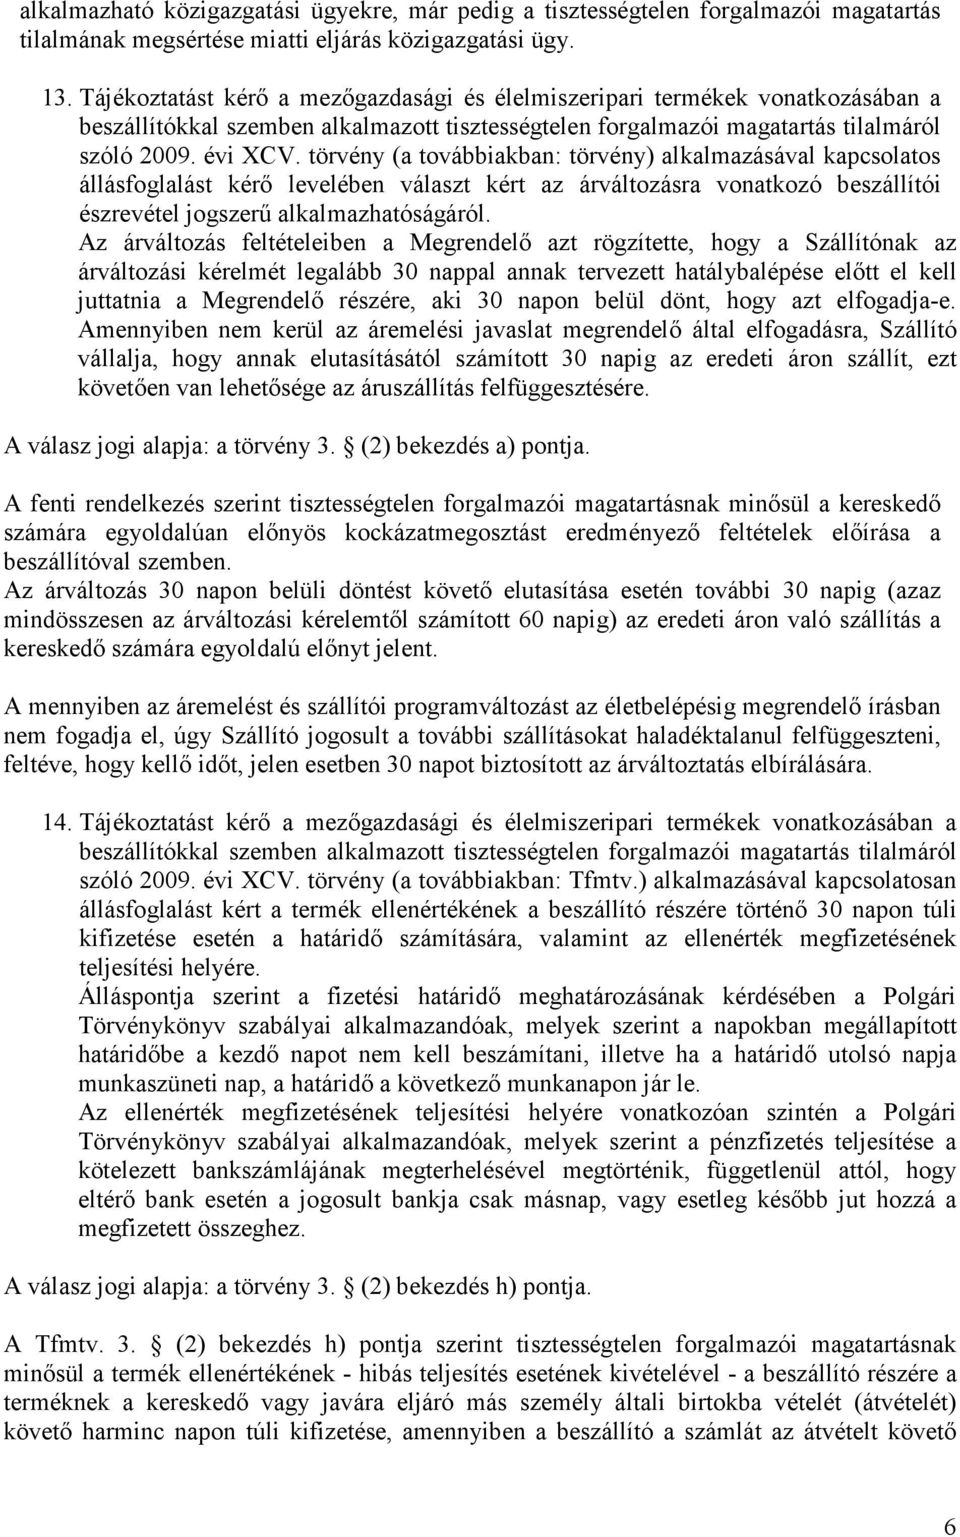 törvény (a továbbiakban: törvény) alkalmazásával kapcsolatos állásfoglalást kérı levelében választ kért az árváltozásra vonatkozó beszállítói észrevétel jogszerő alkalmazhatóságáról.